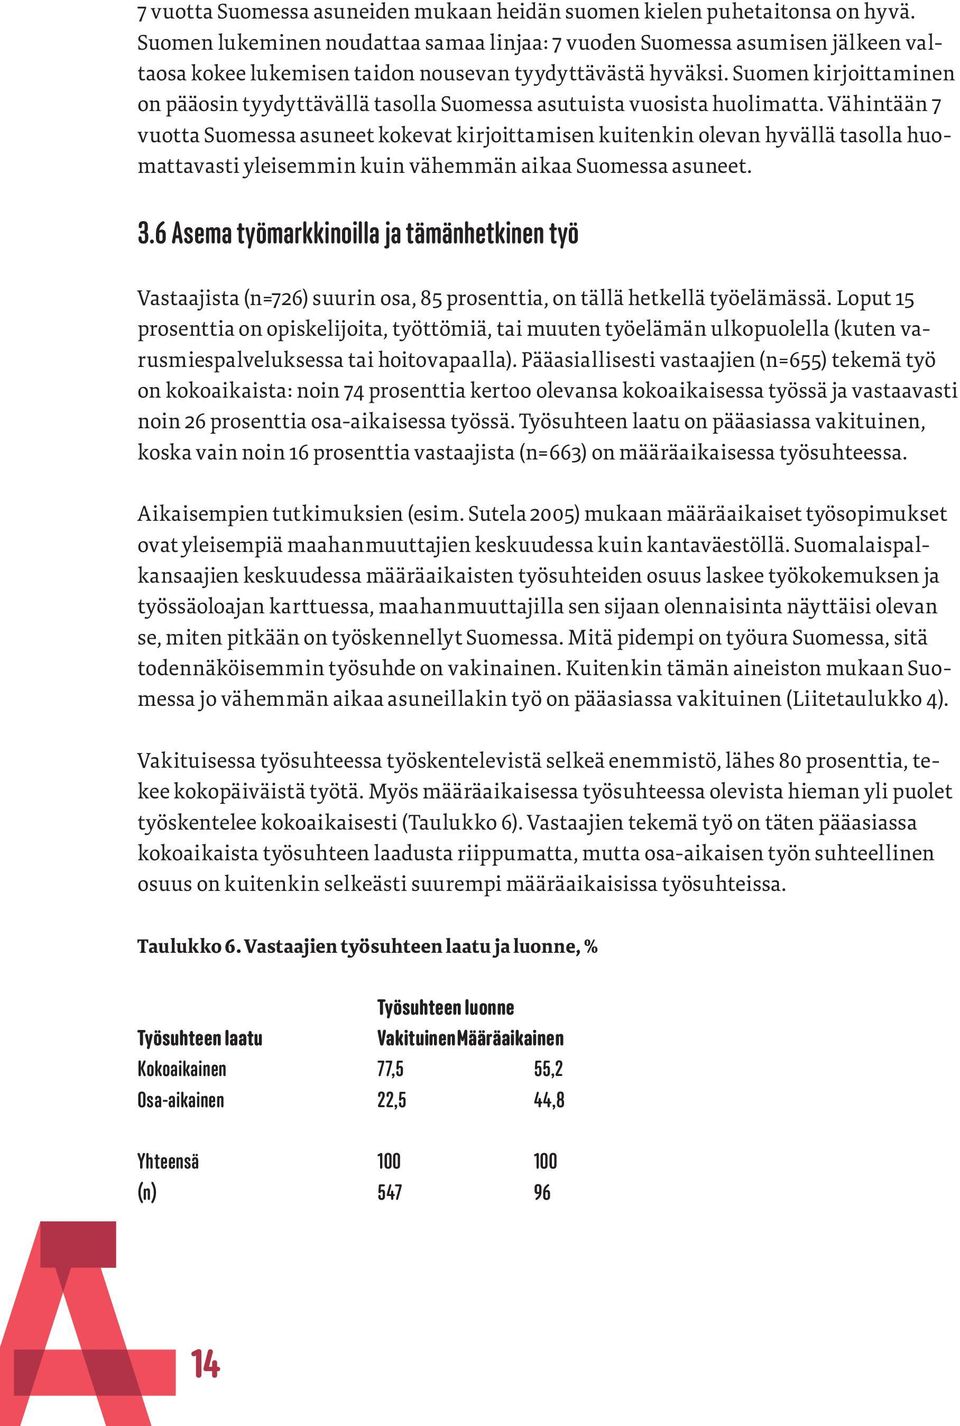 Suomen kirjoittaminen on pääosin tyydyttävällä tasolla Suomessa asutuista vuosista huolimatta.